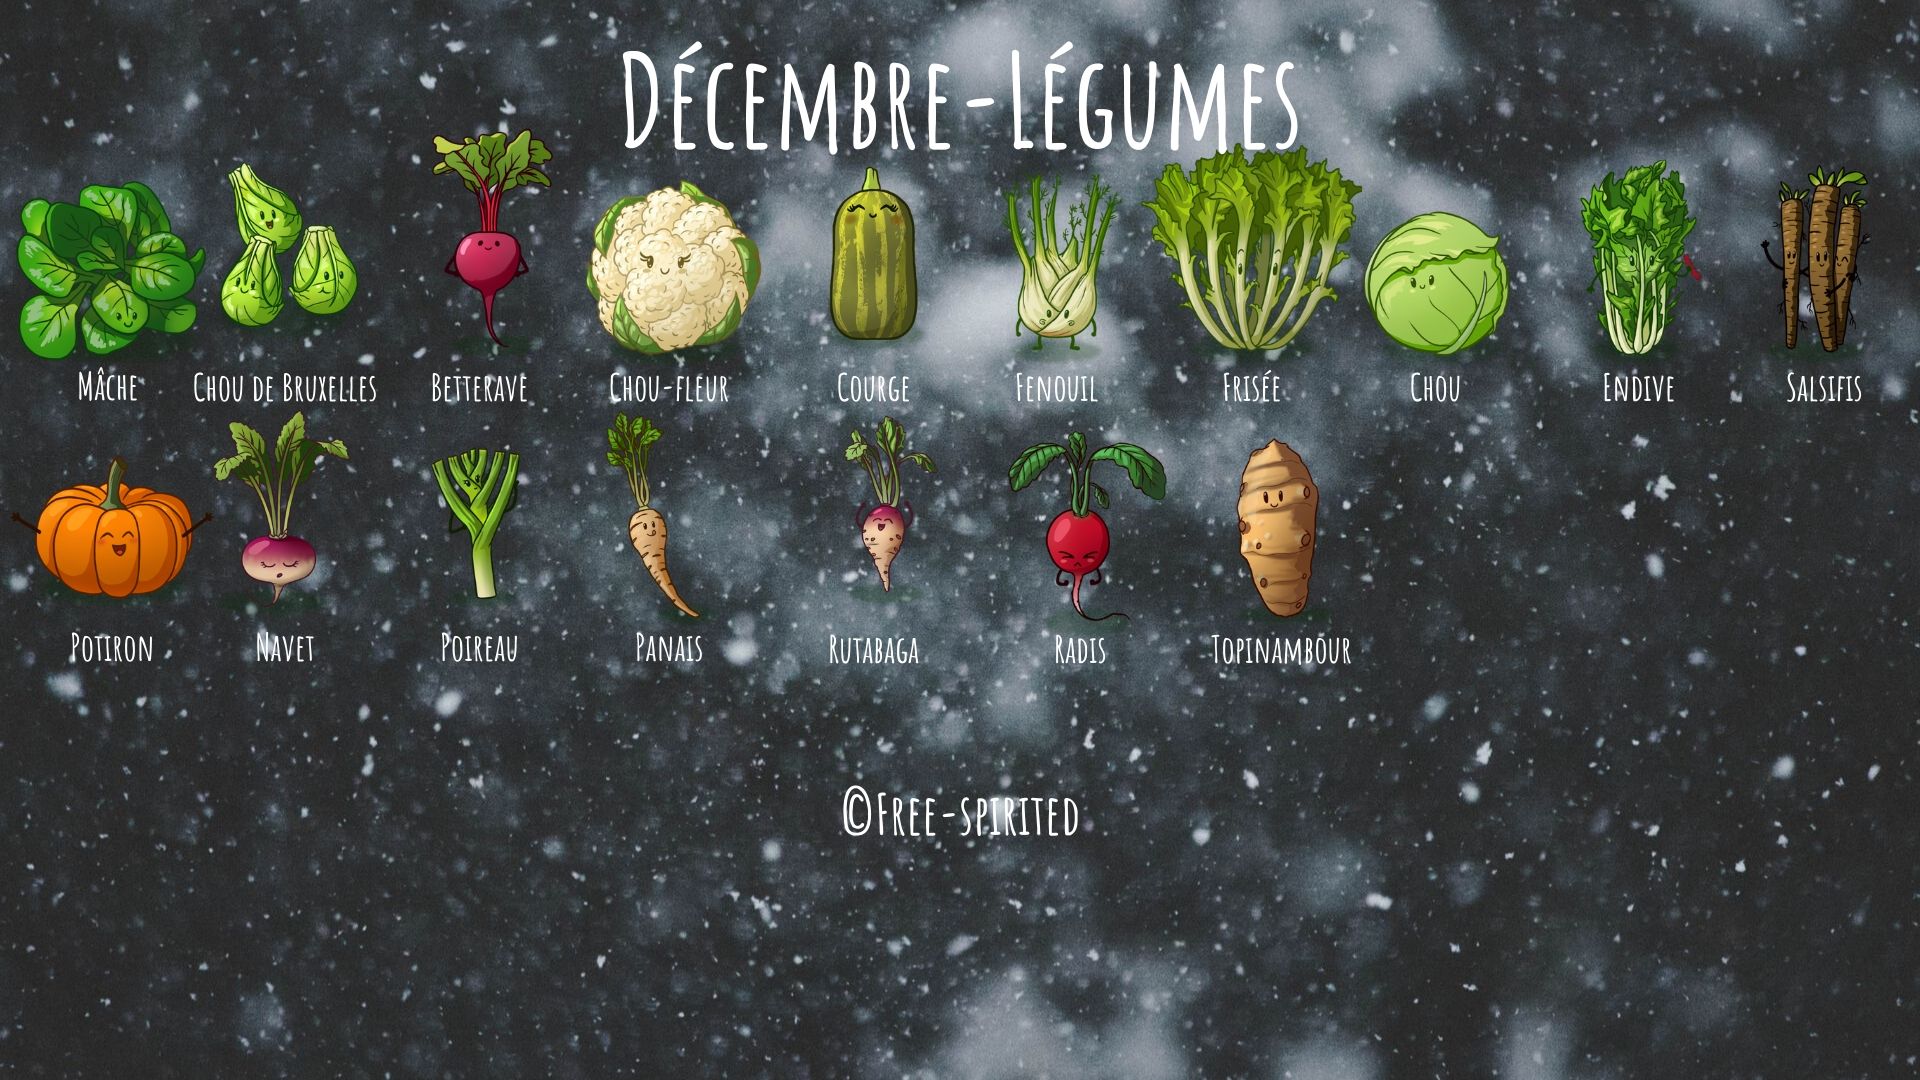 Free-spirited-légumes-décembre